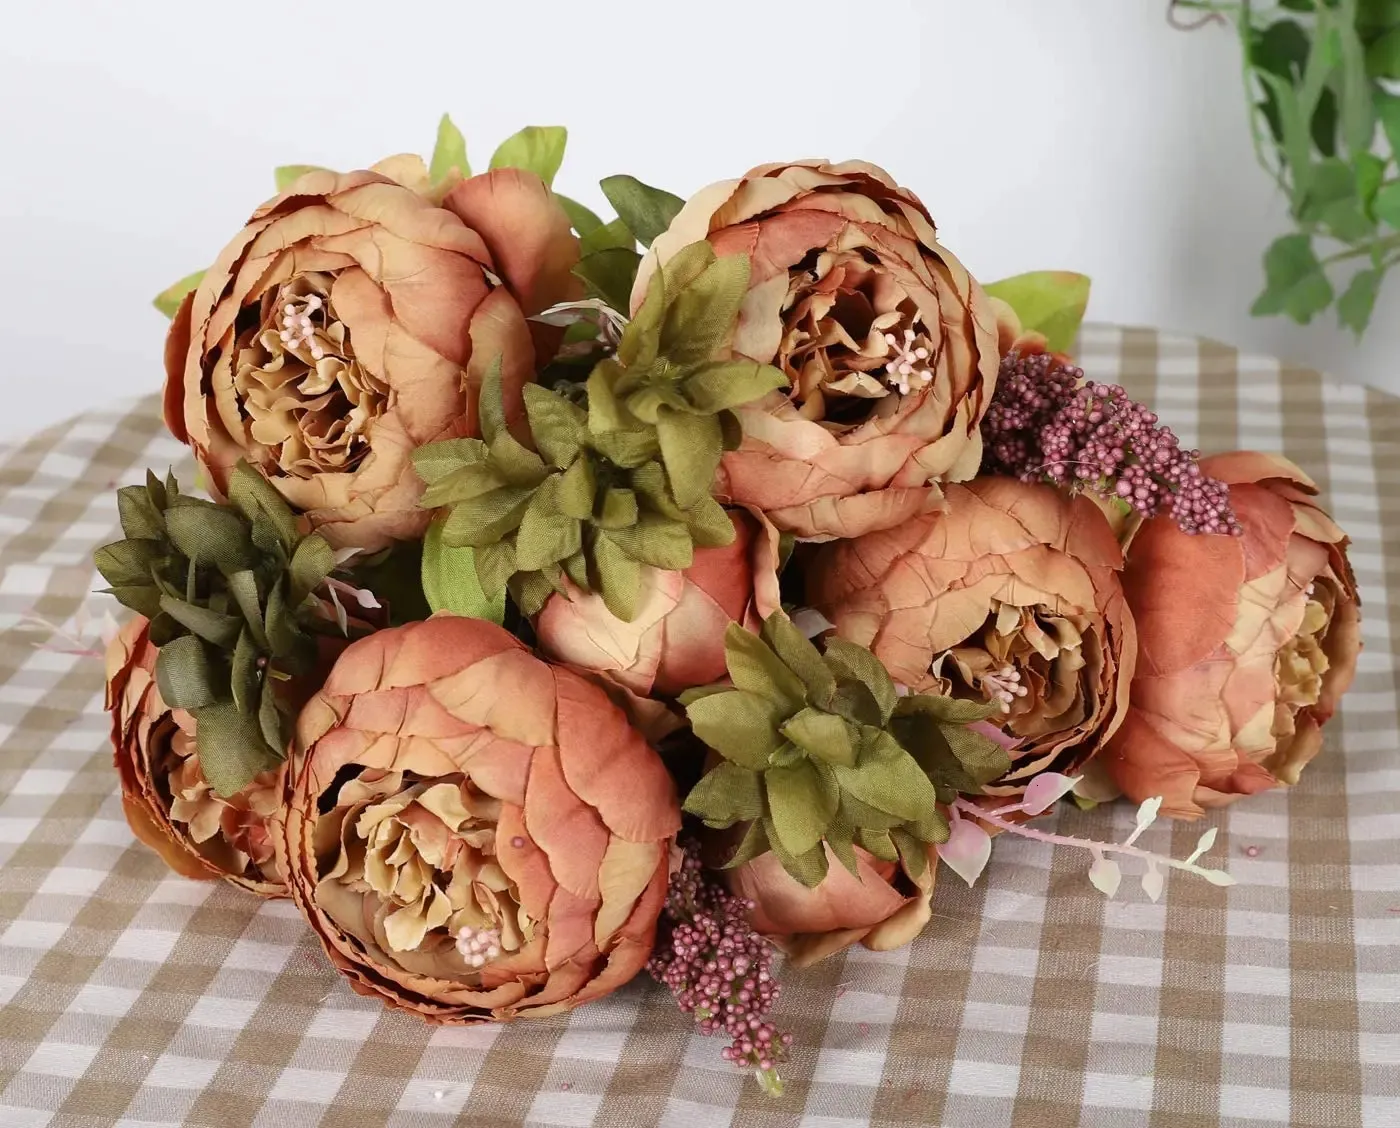 Bouquet de fleurs de pivoines artificielles en soie, faux Arrangement, décoration de mariage Vintage, décoration de maison, 1 Bouquet, 240228